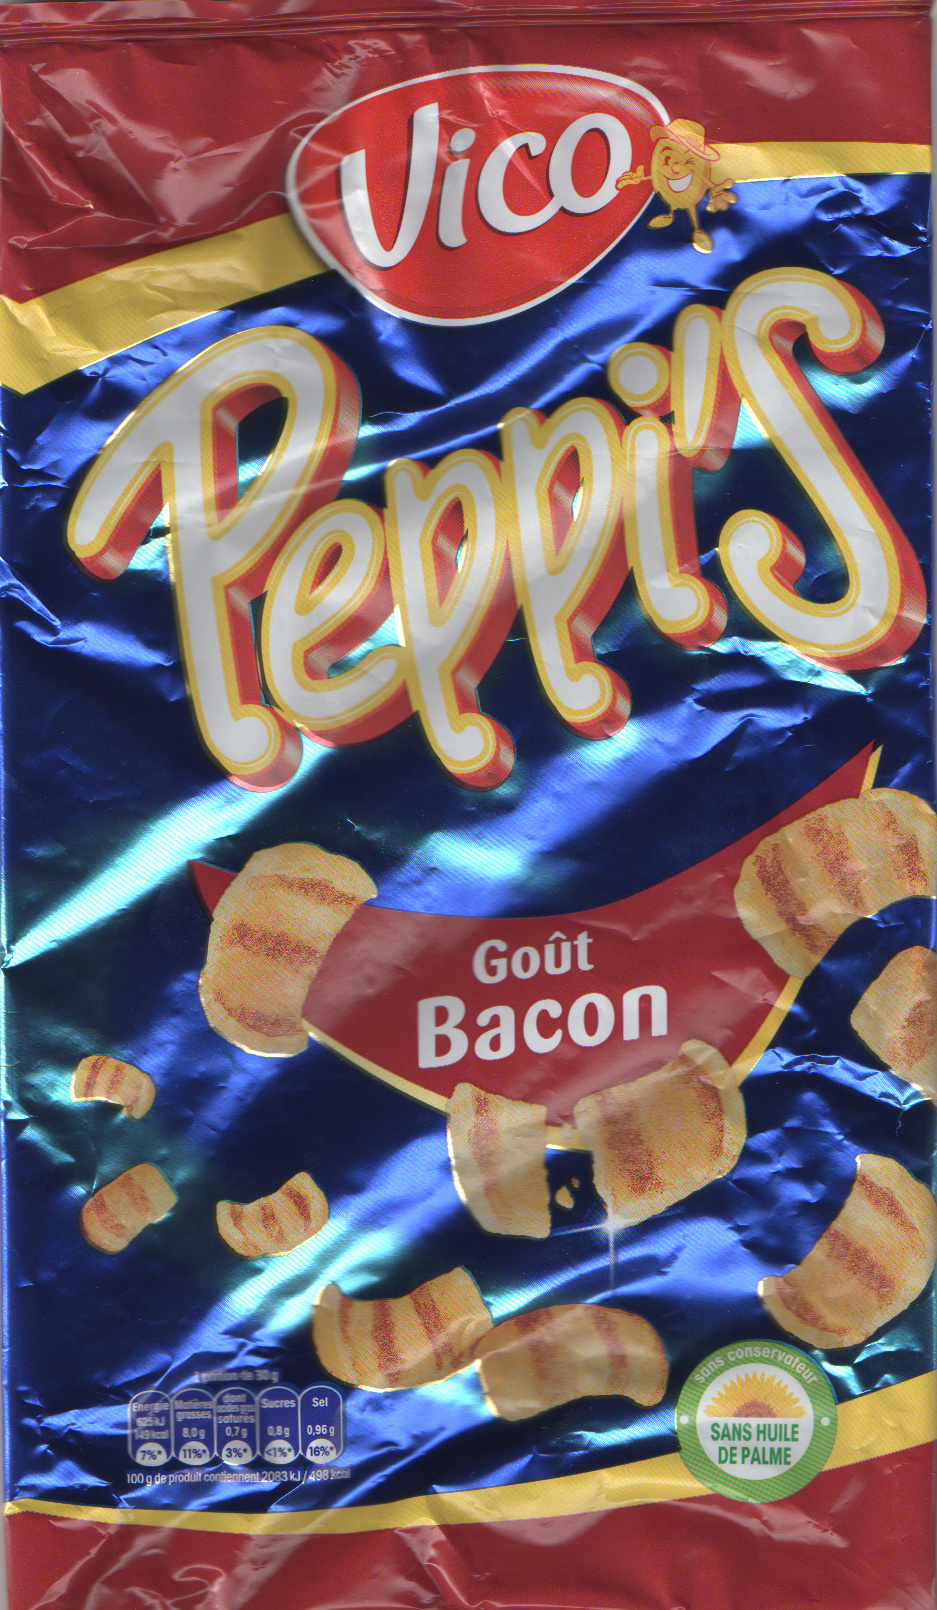 Peppi's goût Bacon - Product - fr